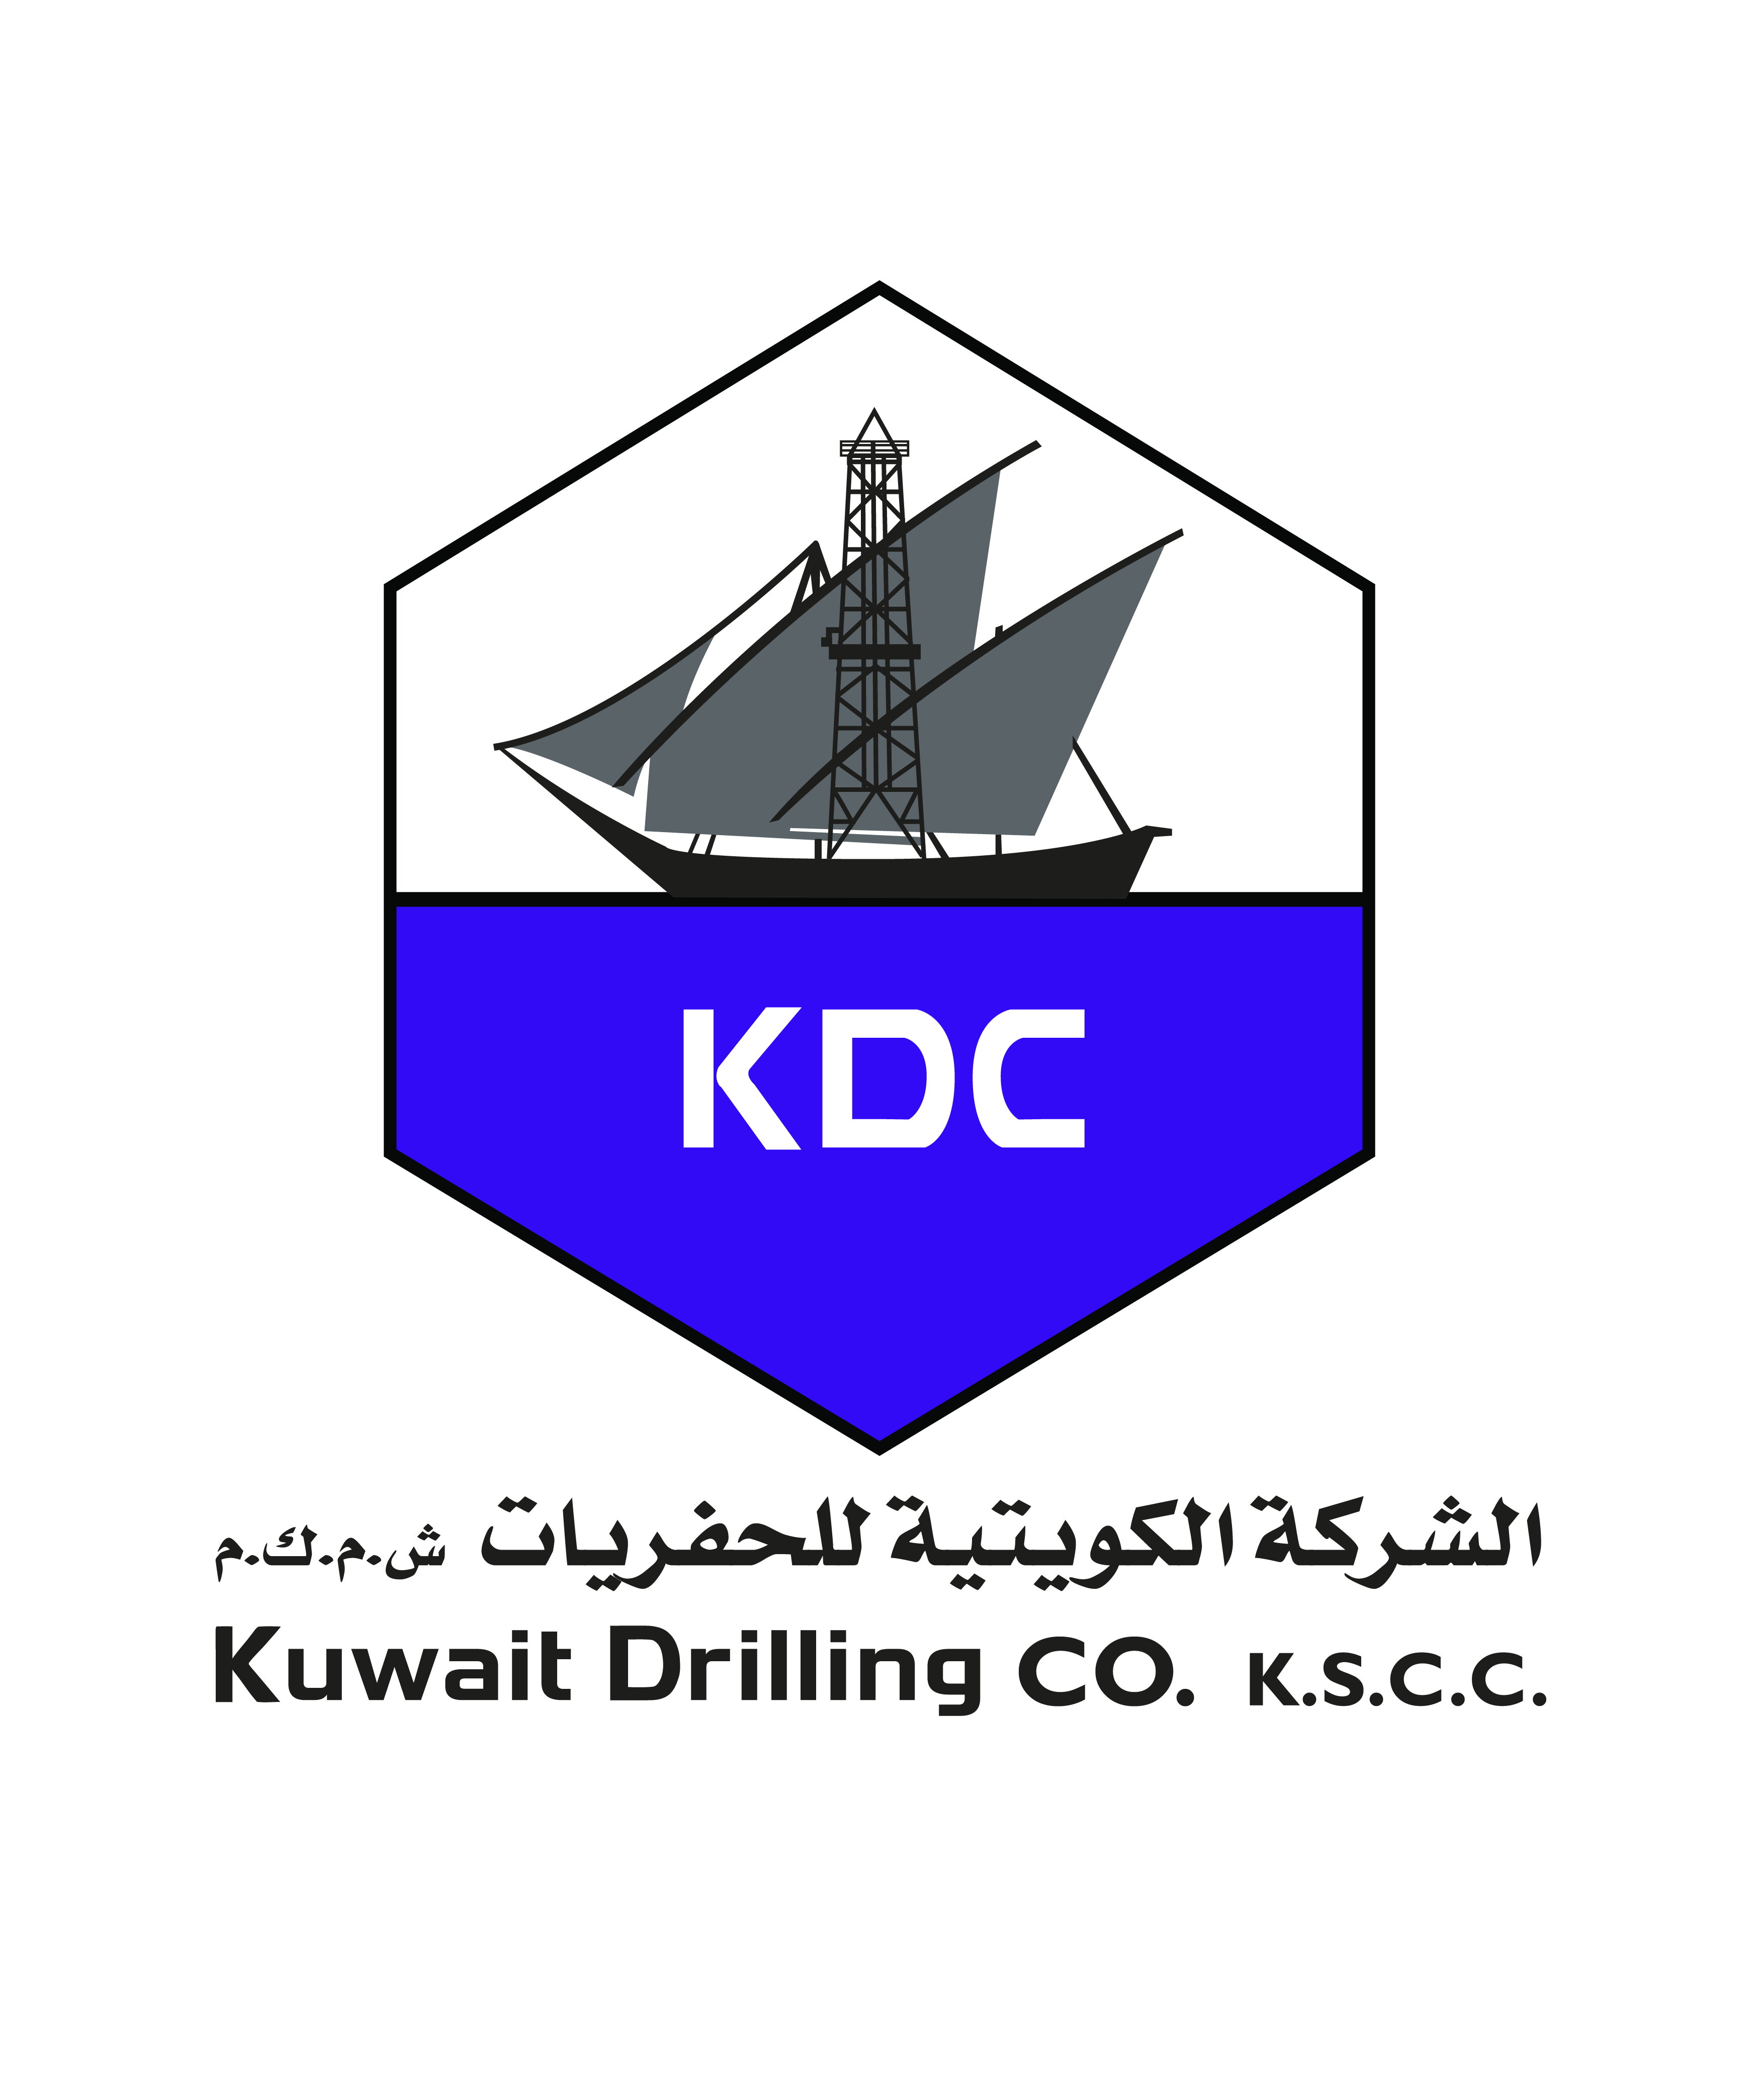 Kuwait Drilling